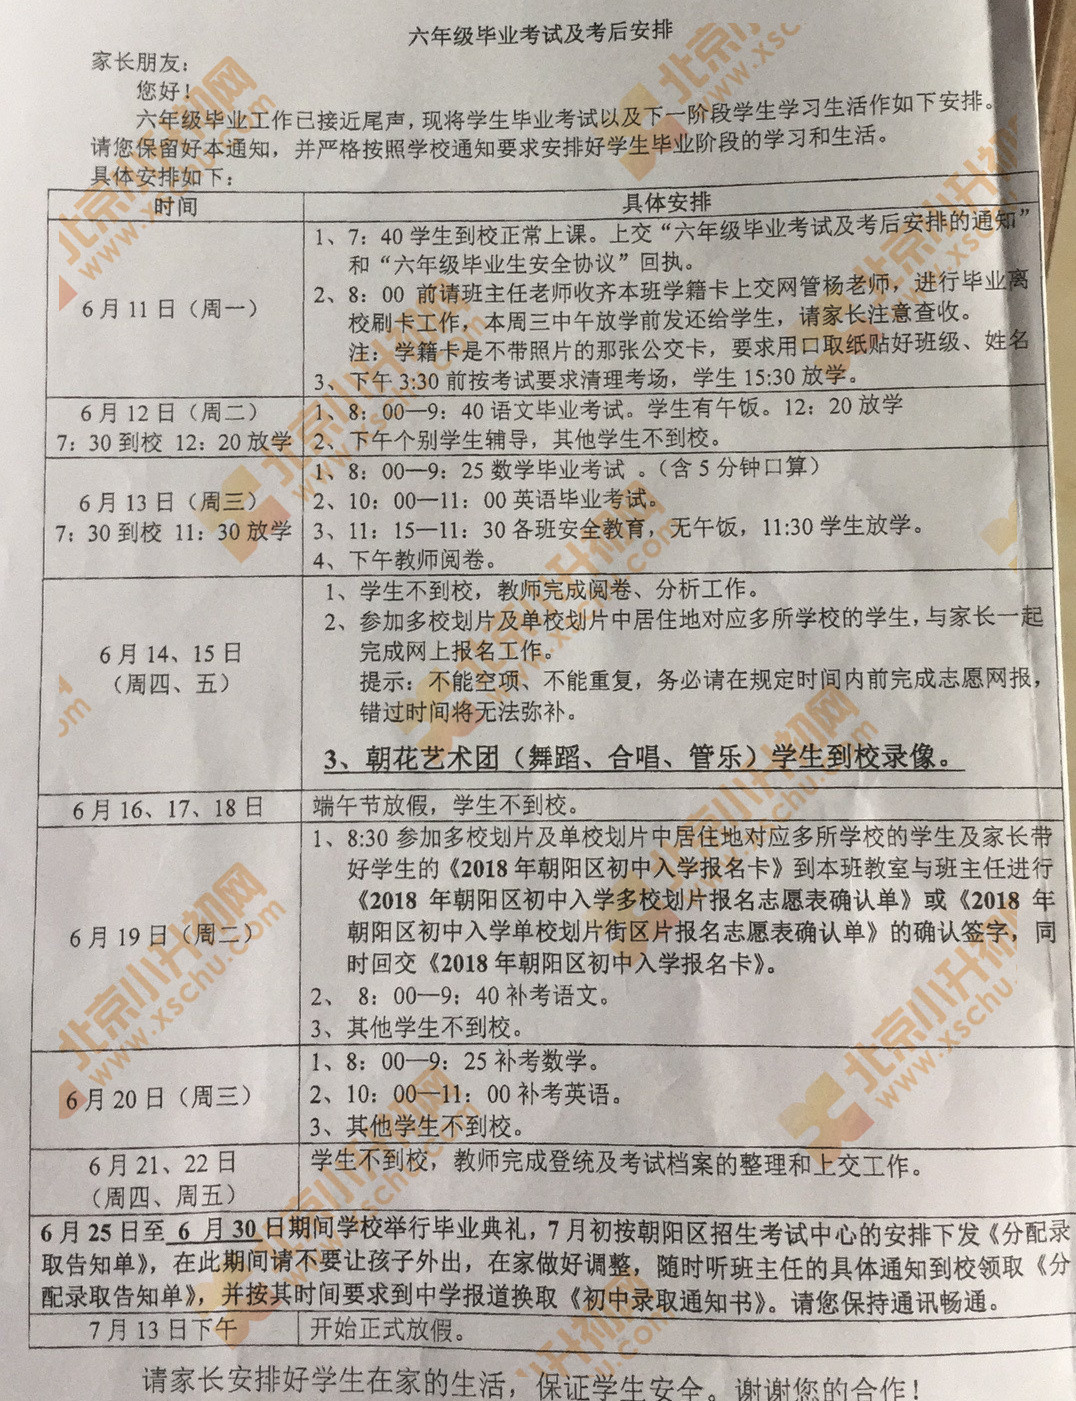 2018年朝阳小学六年级毕业考试及考后安排